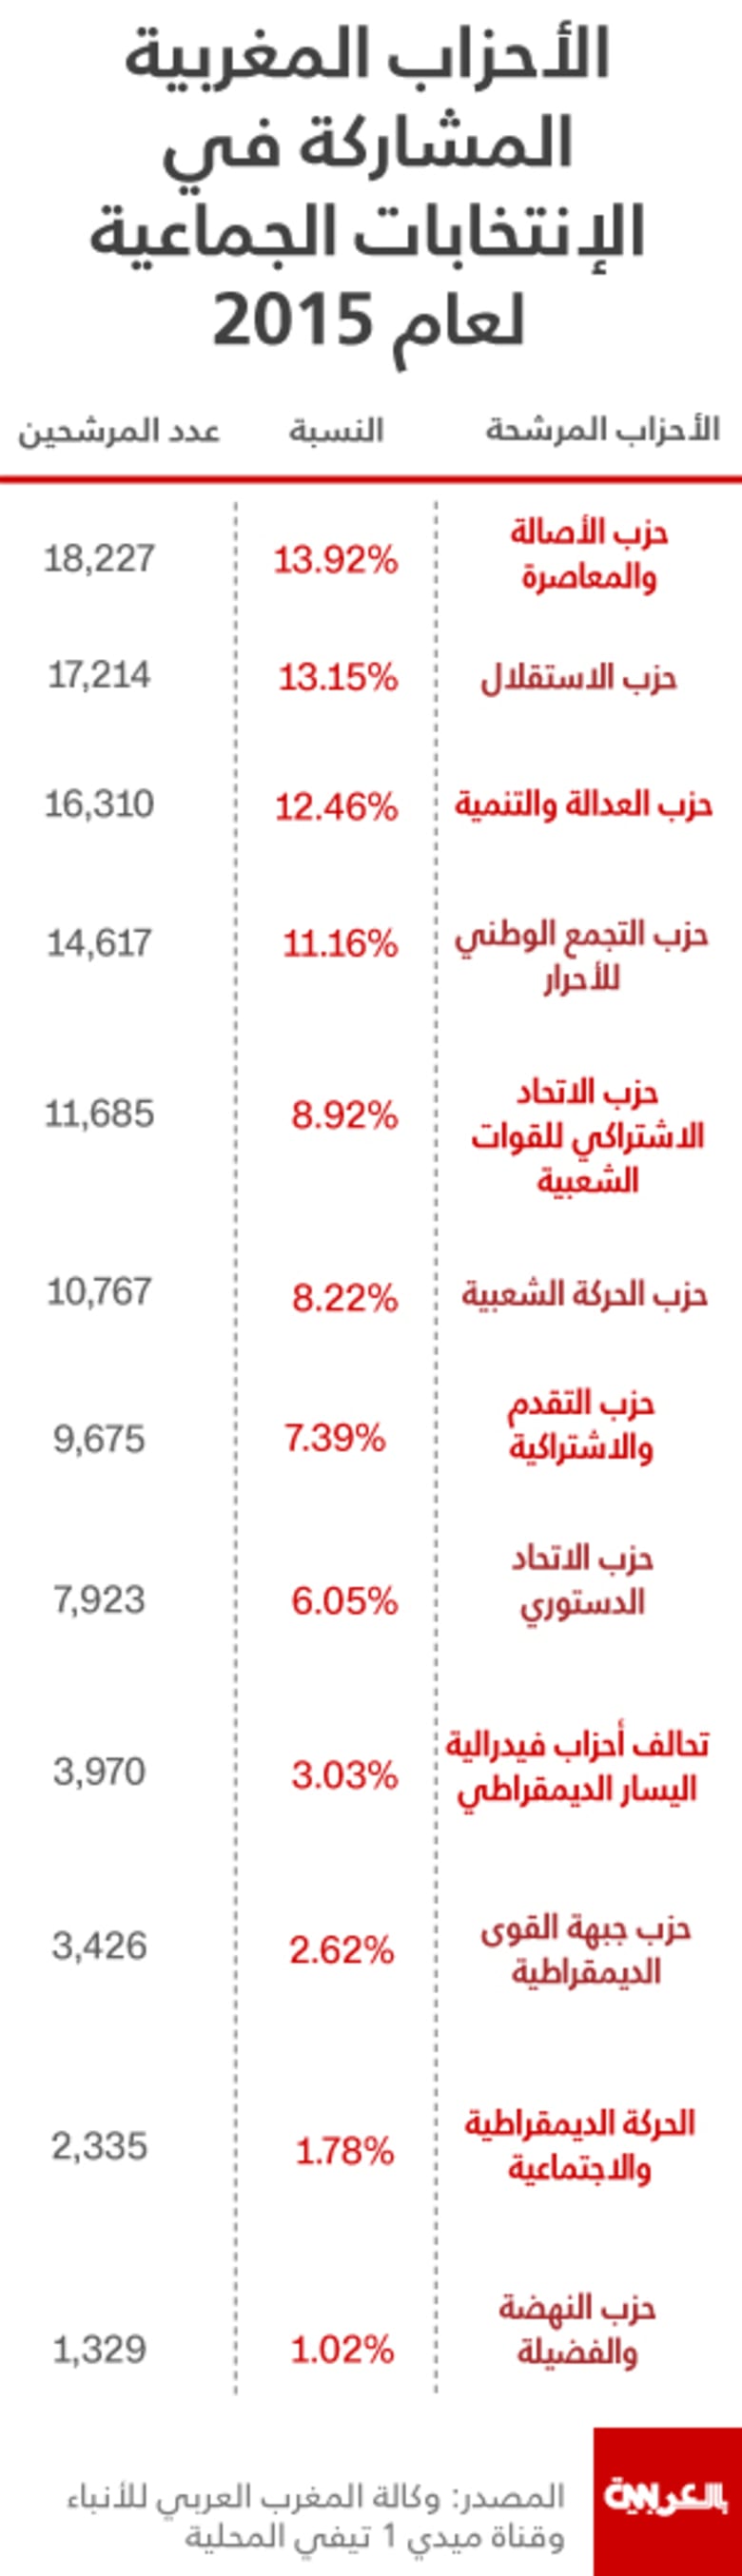 بالأرقام.. تعرّف على أكبر الأحزاب المتنافسة في الانتخابات الجماعية بالمغرب